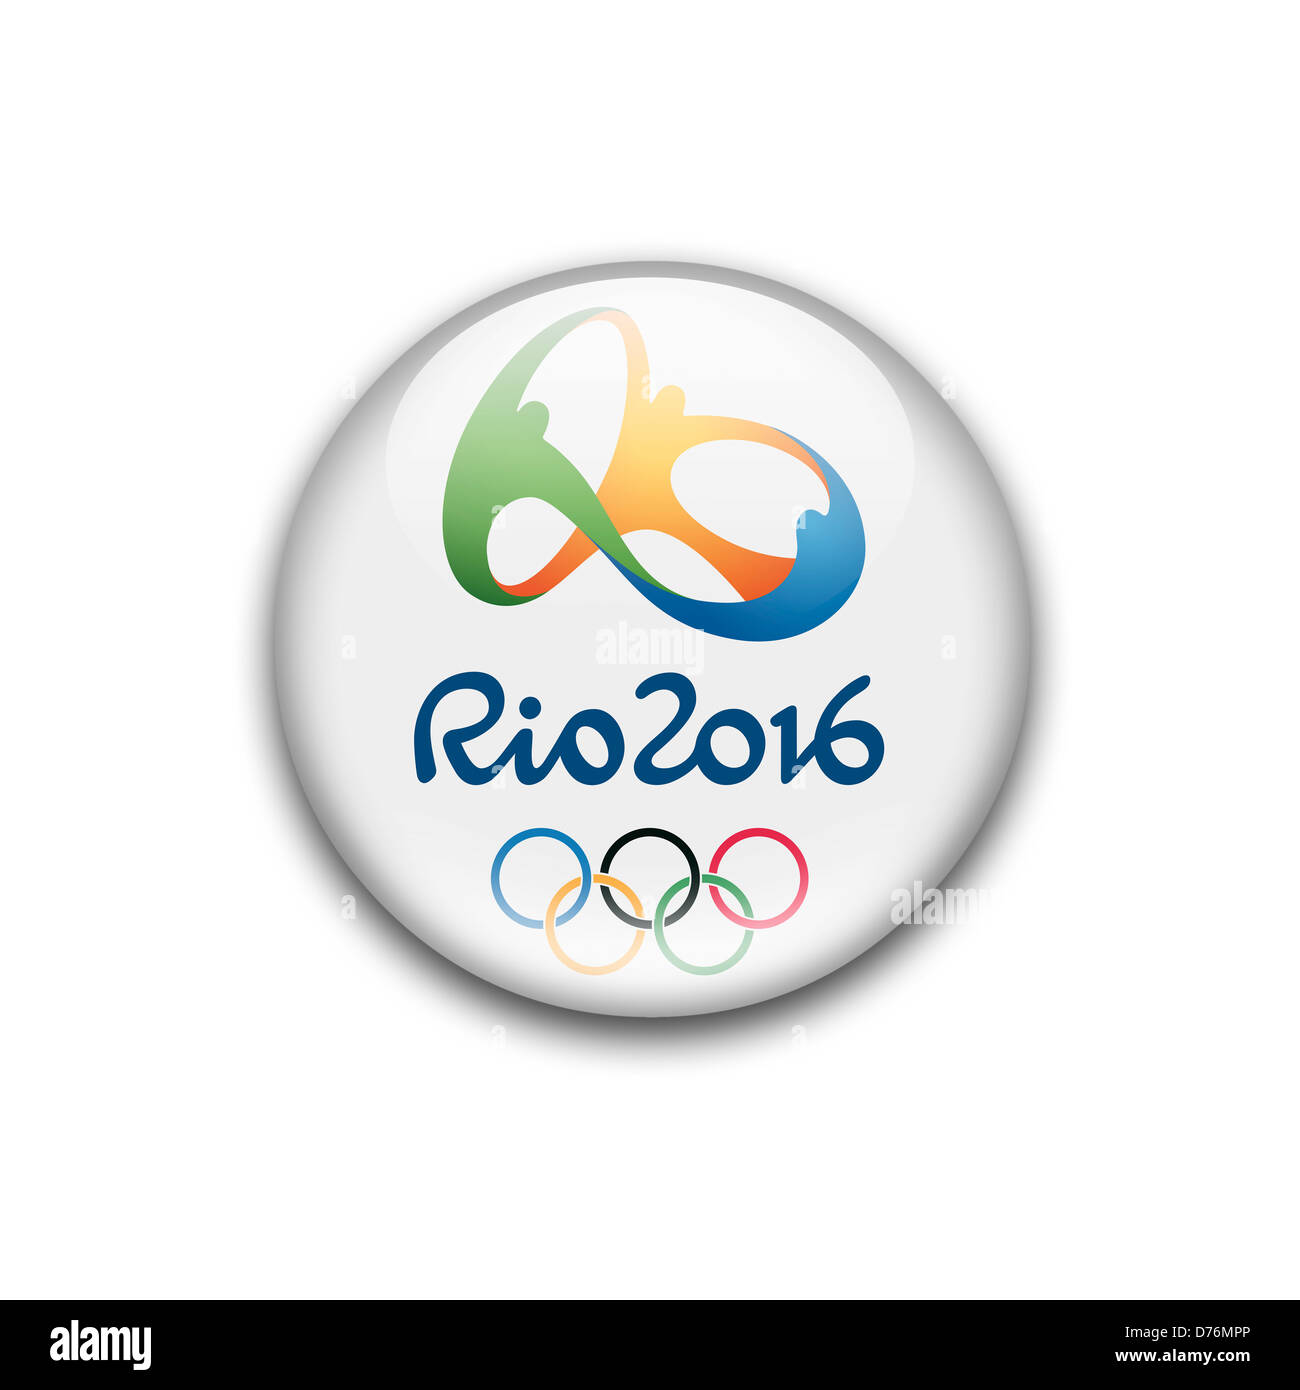 Rio 2016 - Olympic Games summer Rio de Janeiro logo symbol flag icon Stock Photo